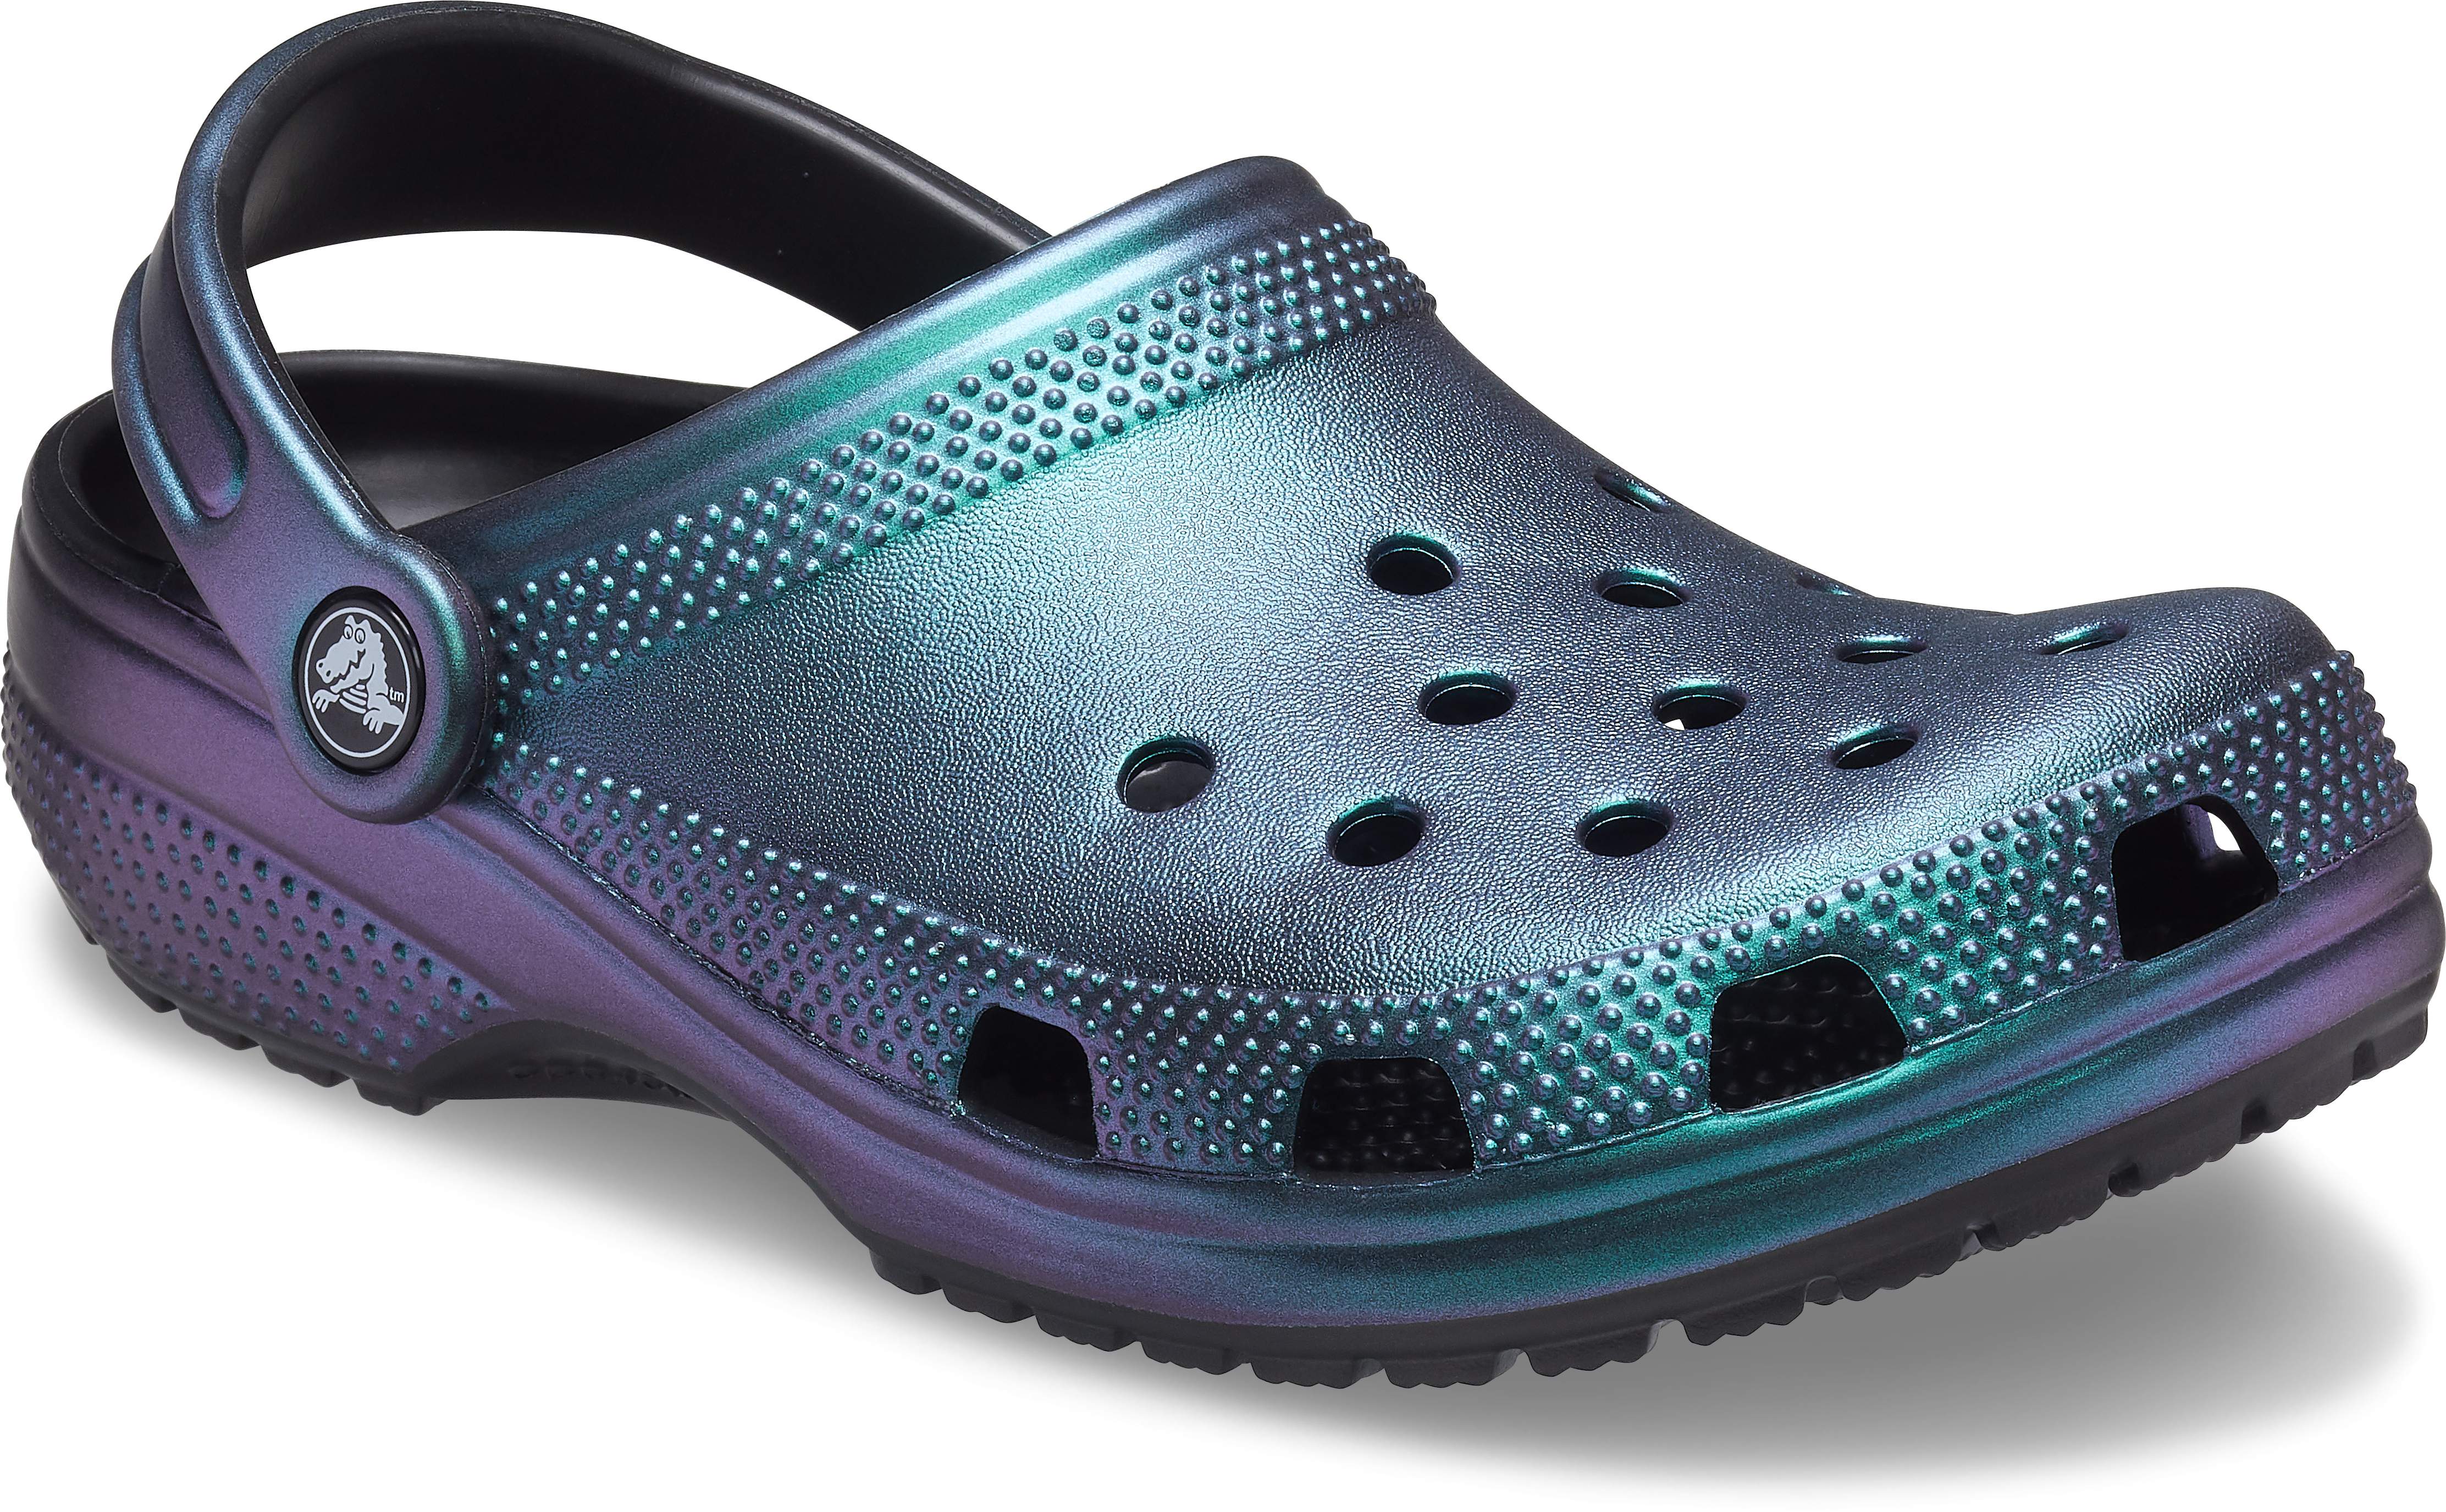 teal color crocs